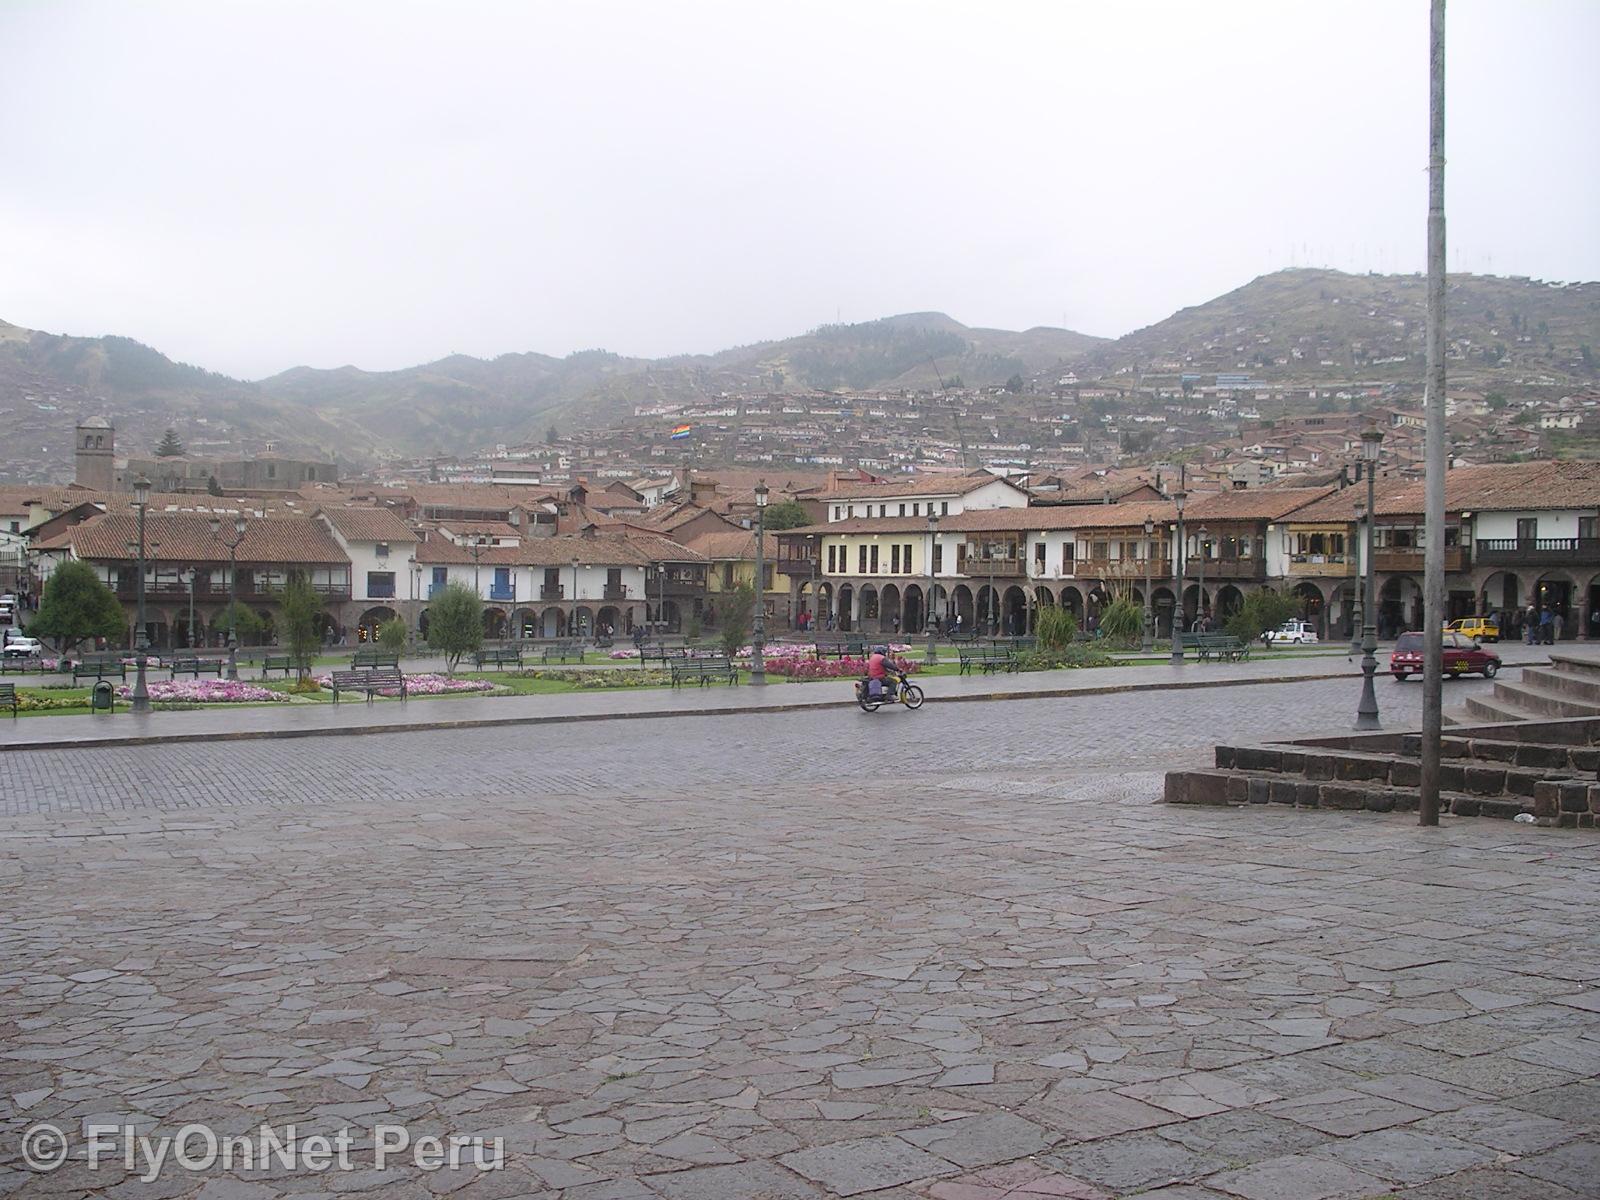 Photo Album: Main Place of Cusco, Cuzco